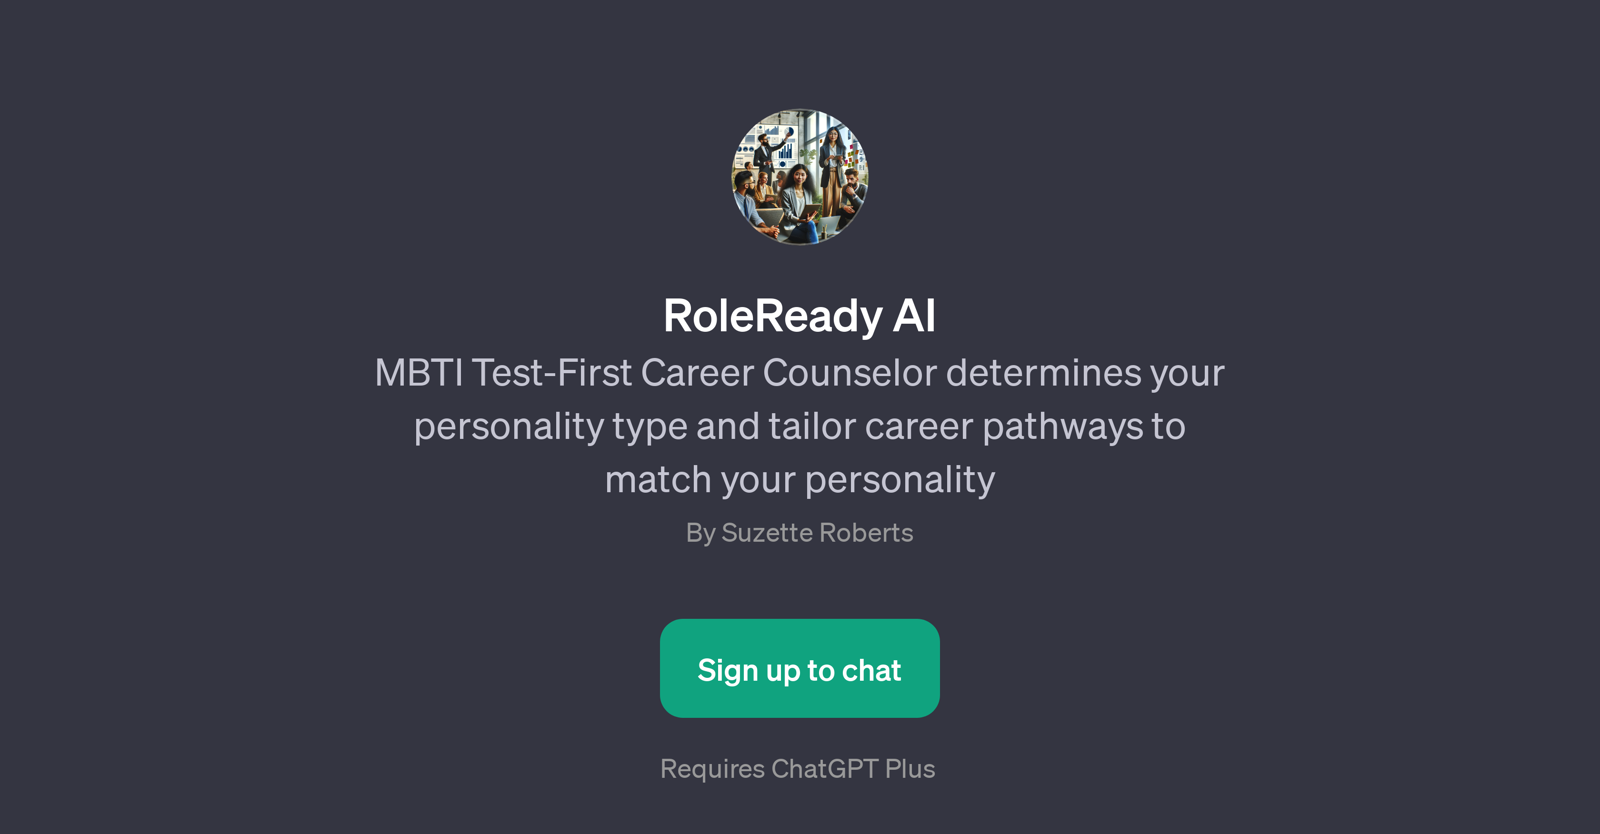 RoleReady AI website